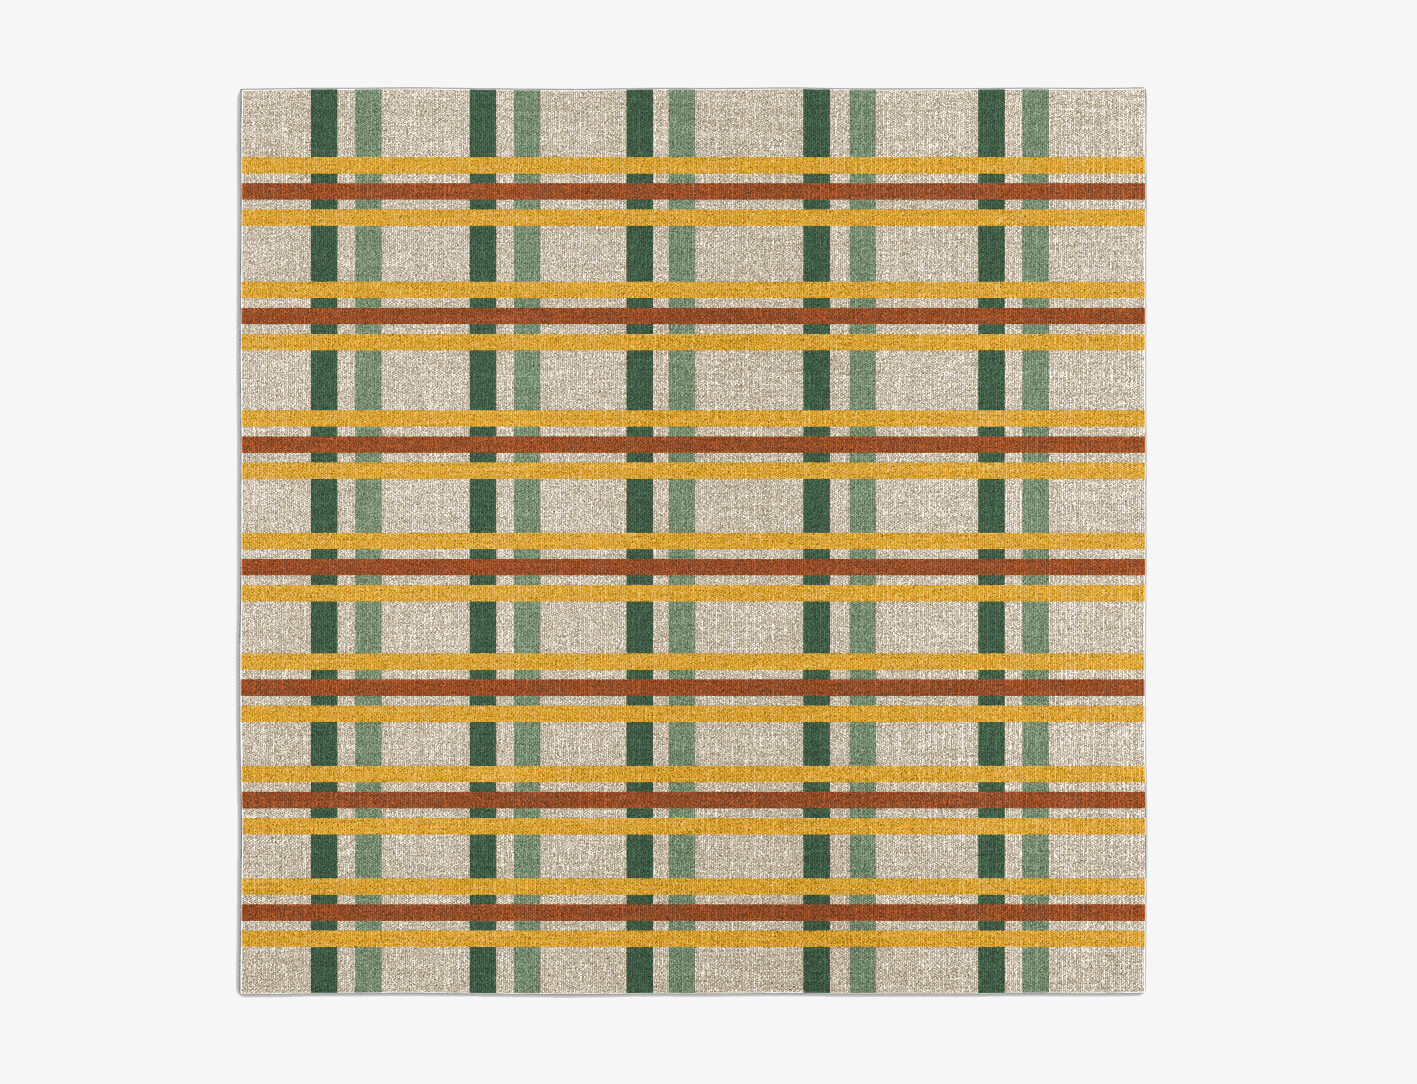 Haiku Geometric Square Flatweave New Zealand Wool Custom Rug by Rug Artisan